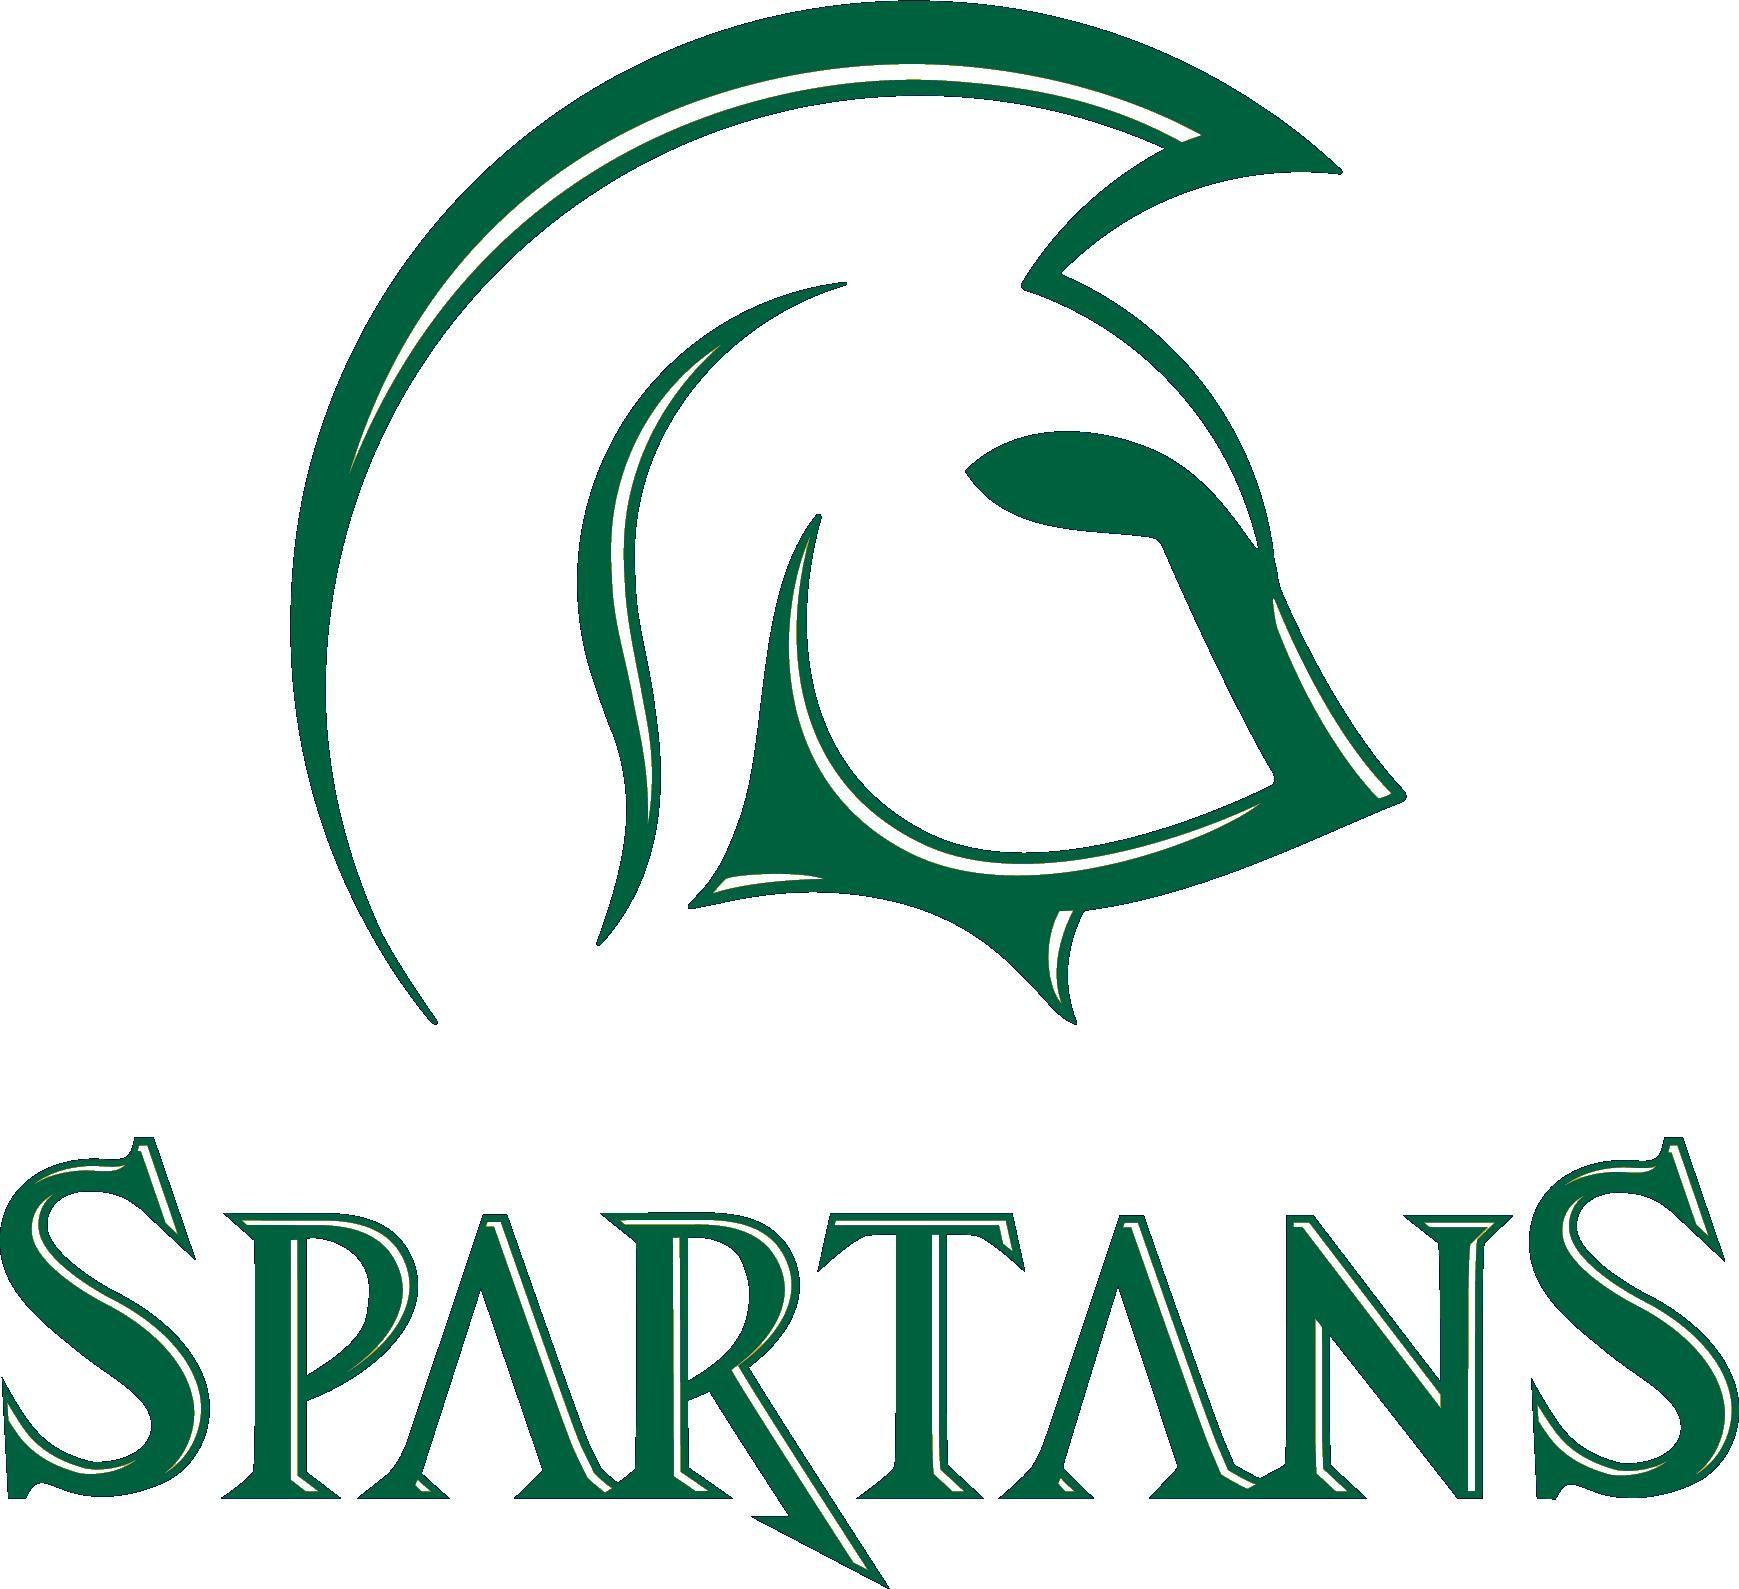 MSU Spartan Logo - 2nd Best Spartan Logo?